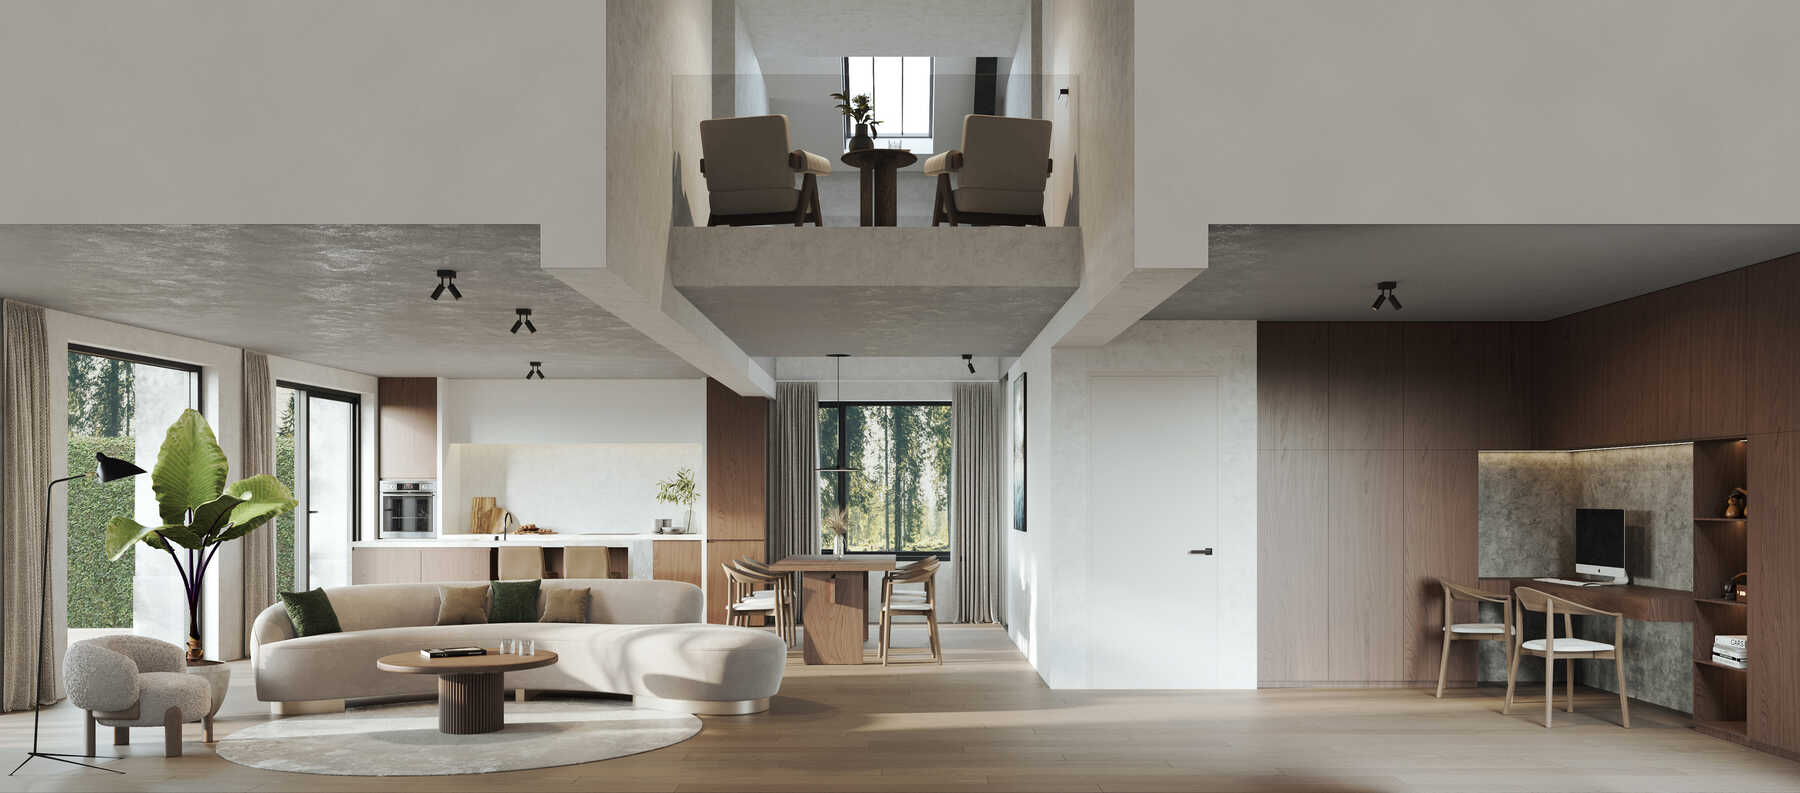 Duplex luxe appartement te koop betonlook